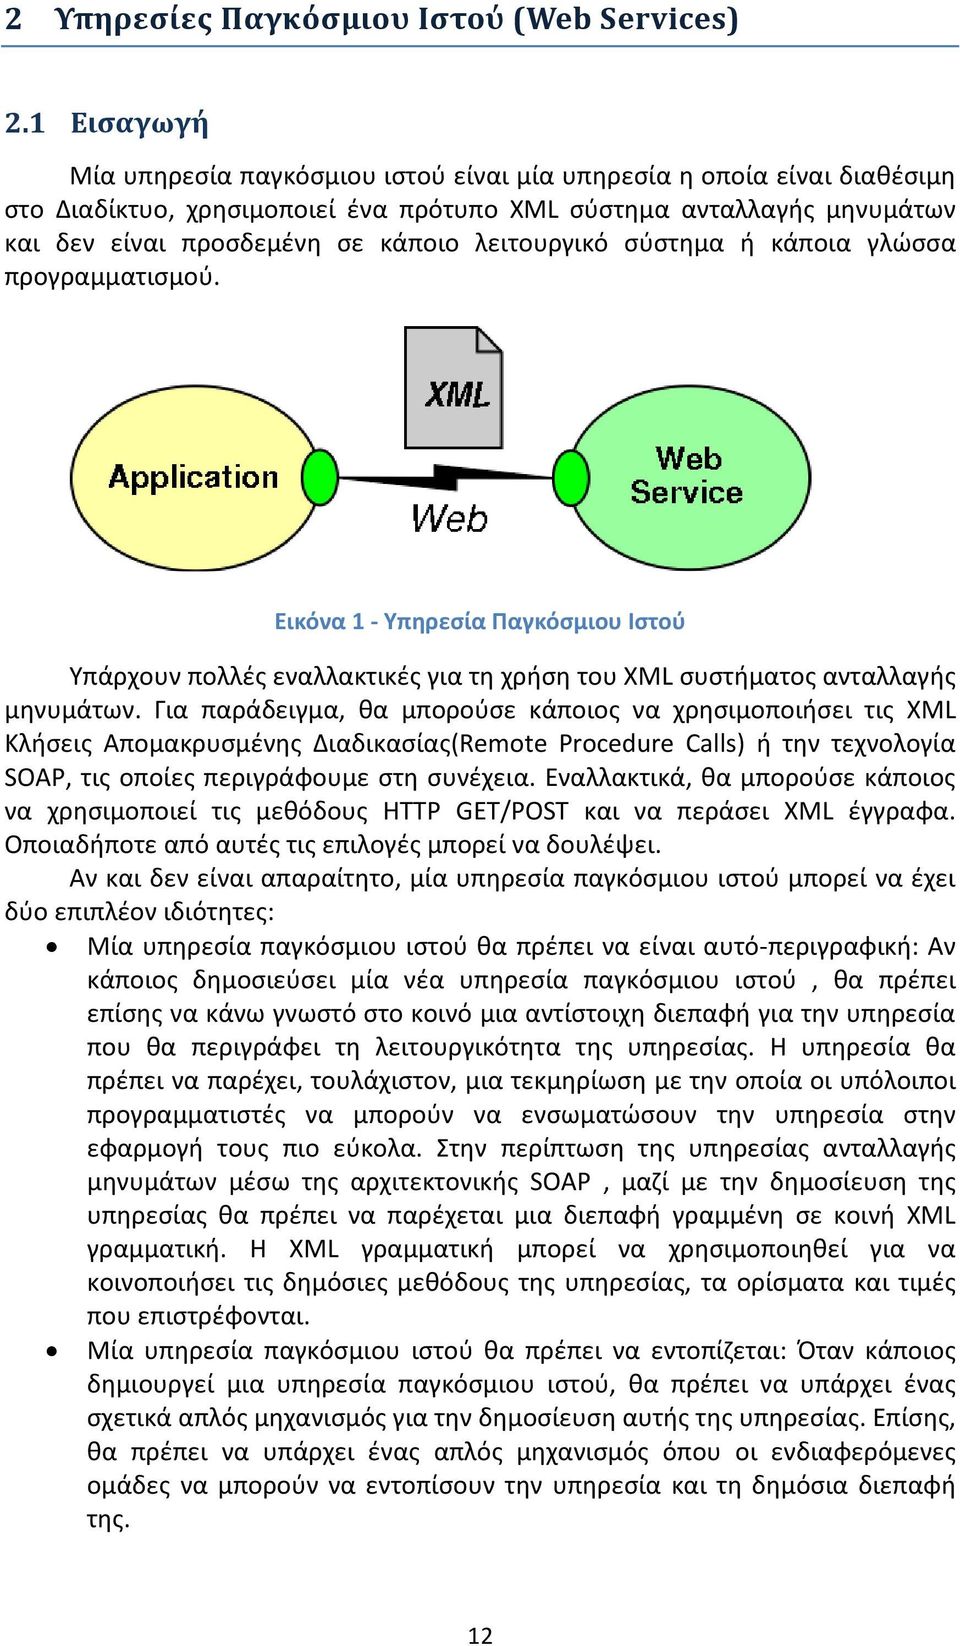 λειτουργικό σύστημα ή κάποια γλώσσα προγραμματισμού. Εικόνα 1 - Υπηρεσία Παγκόσμιου Ιστού Υπάρχουν πολλές εναλλακτικές για τη χρήση του XML συστήματος ανταλλαγής μηνυμάτων.